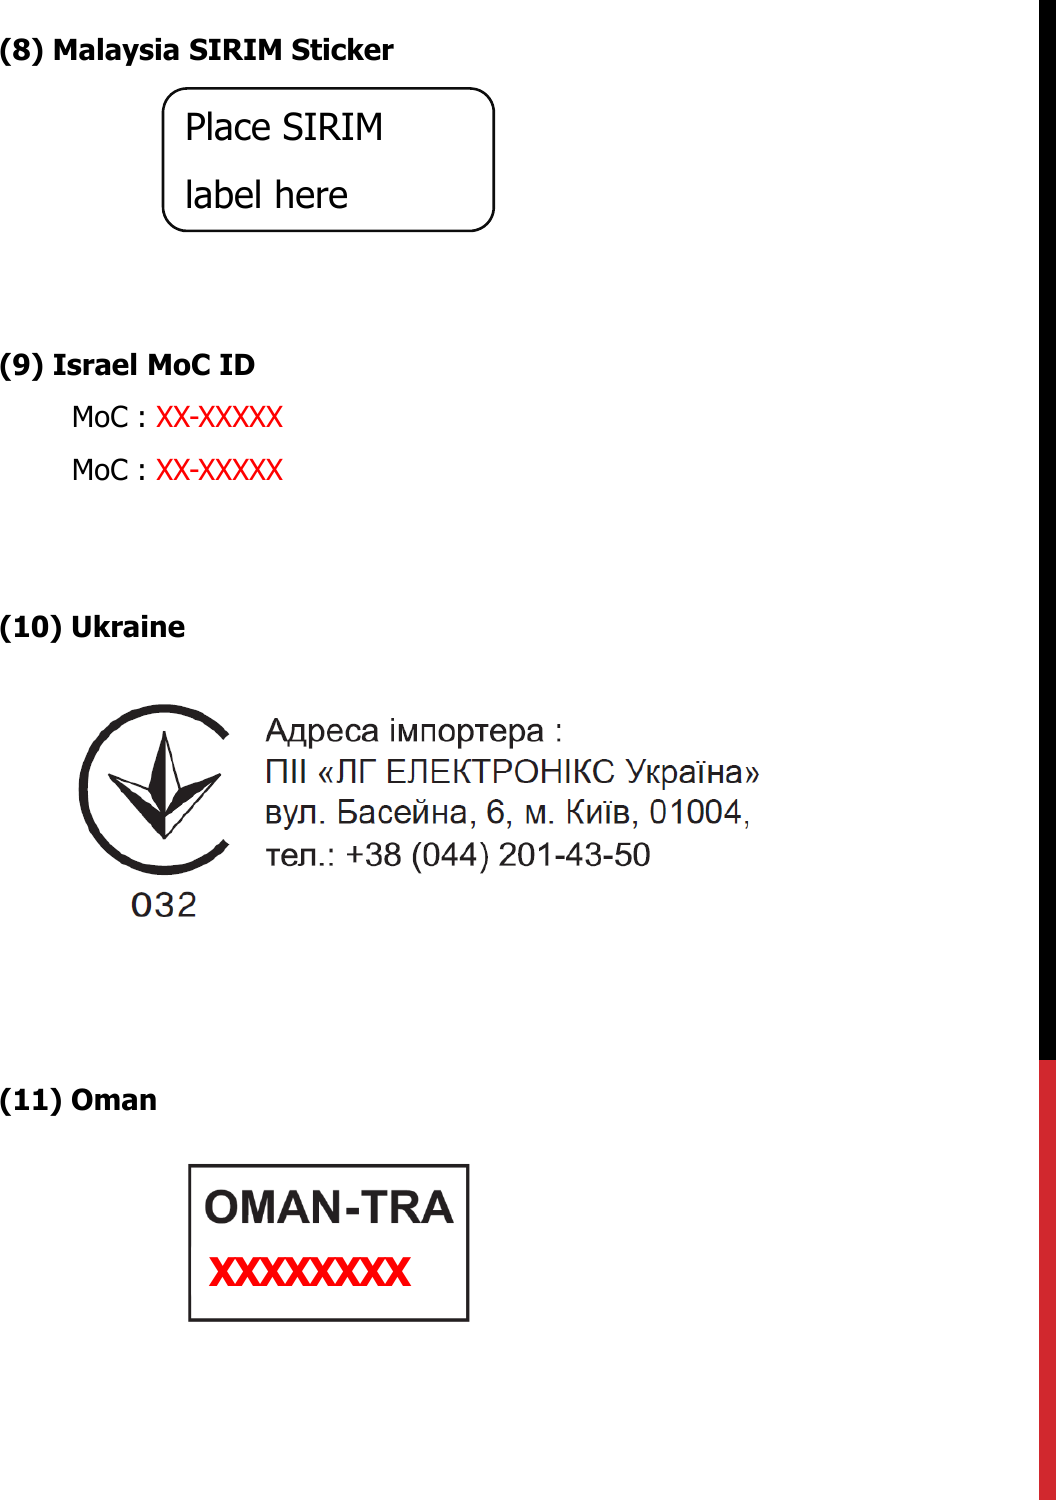 (8) Malaysia SIRIM Sticker(9) Israel MoC IDMoC : XX-XXXXXMoC : XX-XXXXX(10) Ukraine(11) OmanPlace SIRIM label hereXXXXXXXX